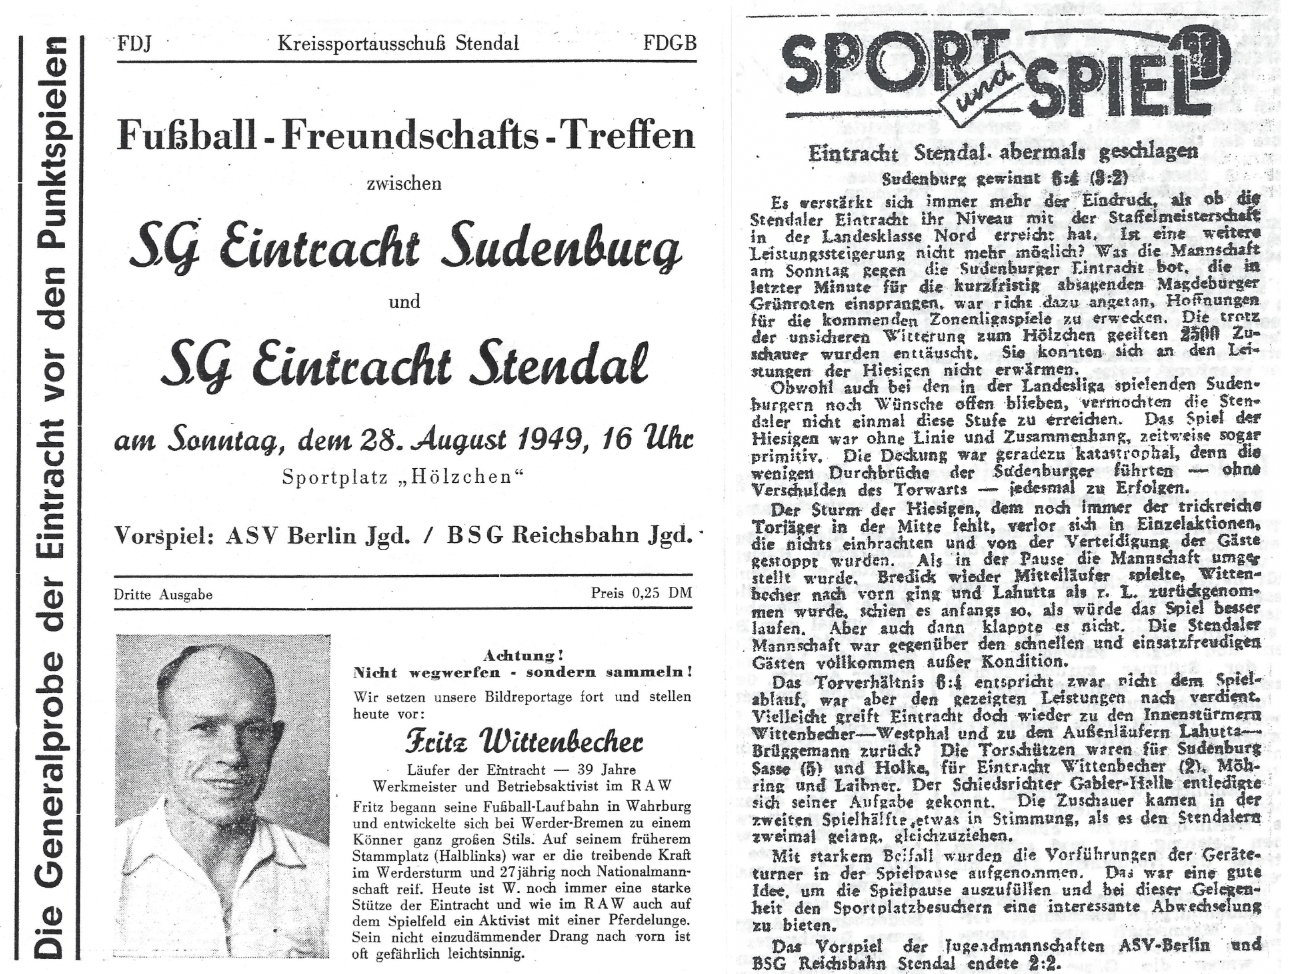 Programmheft-Titelseite (links) und Bericht (rechts) des Spiels aus dem Jahr 1949.